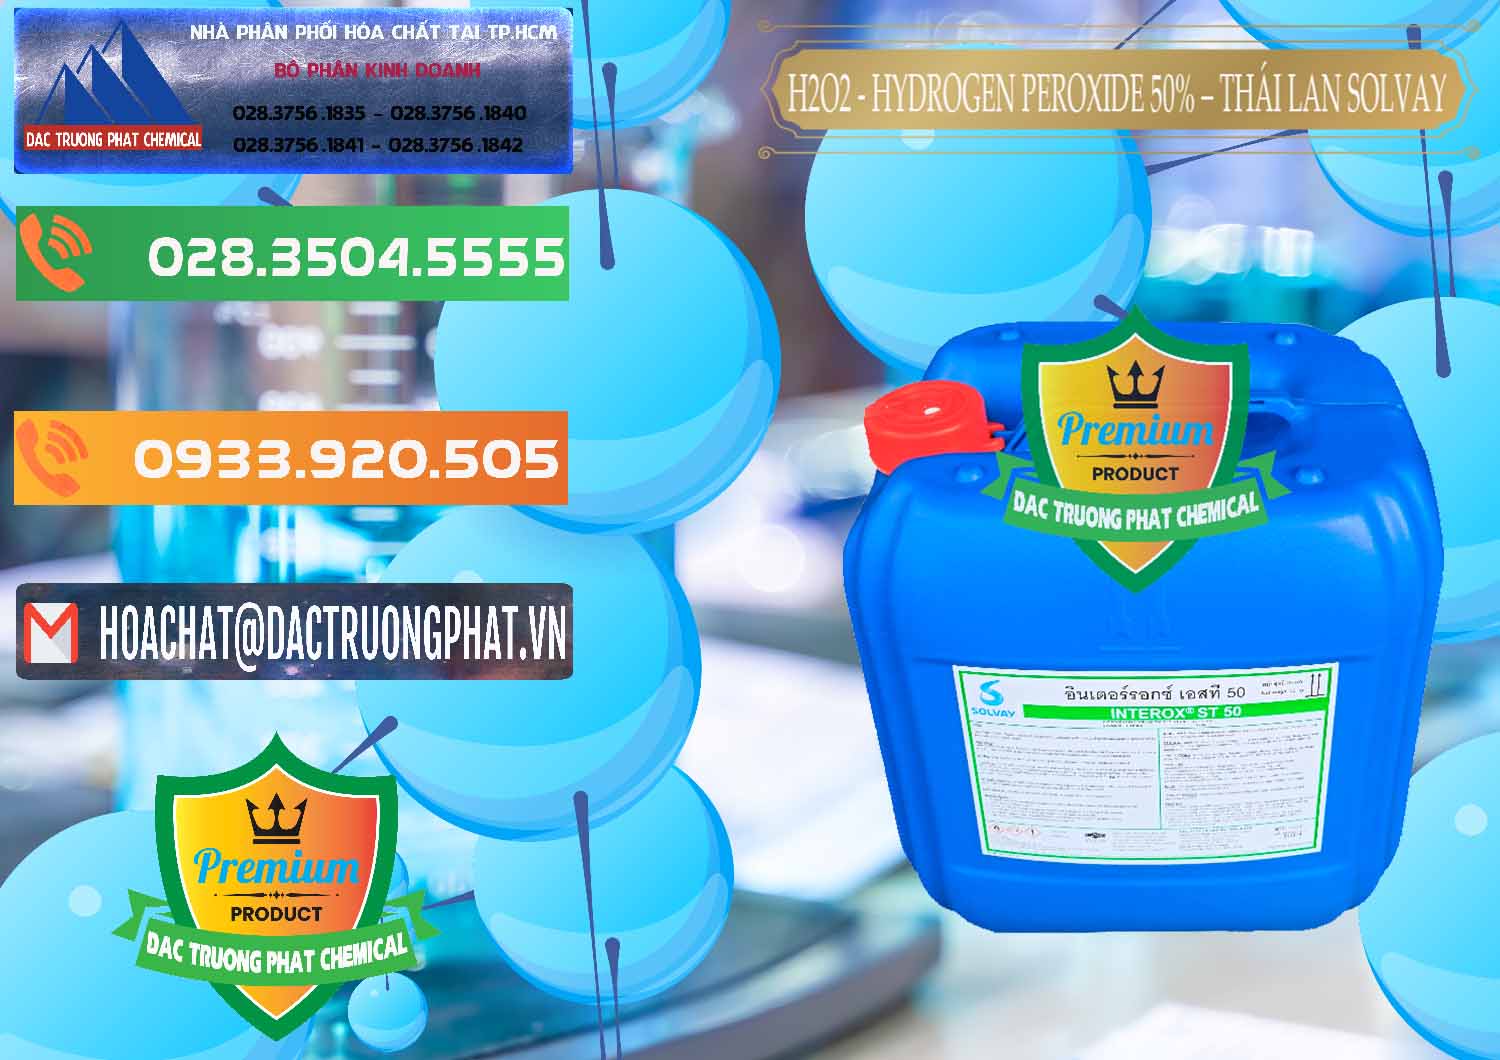 Đơn vị chuyên bán ( cung cấp ) H2O2 - Hydrogen Peroxide 50% Thái Lan Solvay - 0068 - Nơi chuyên phân phối & kinh doanh hóa chất tại TP.HCM - hoachatxulynuoc.com.vn